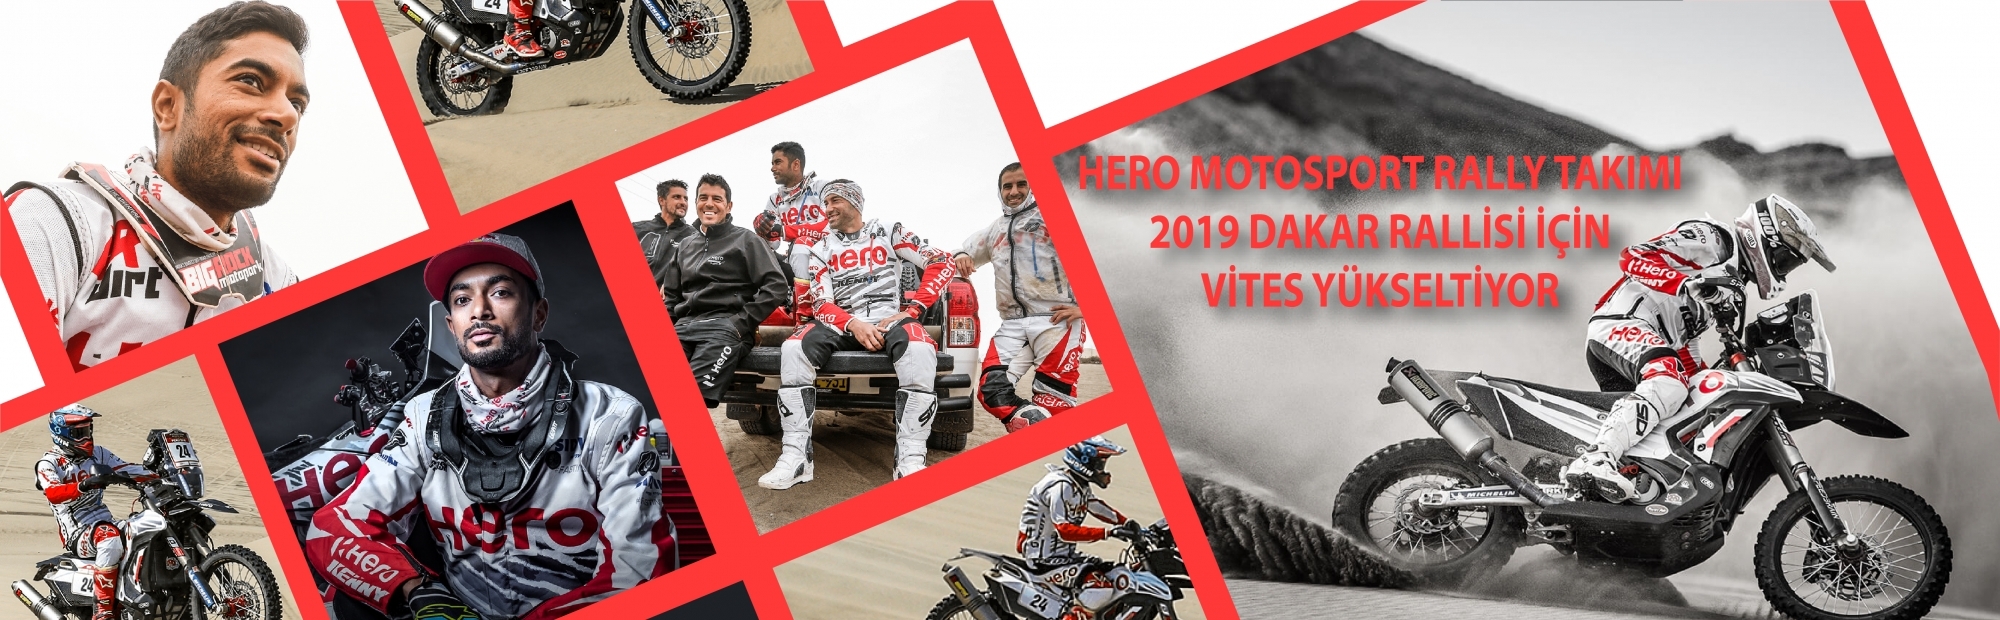 HERO MOTOSPORT RALLY TAKIMI 2019 DAKAR RALLİSİ İÇİN VİTES YÜKSELTİYOR